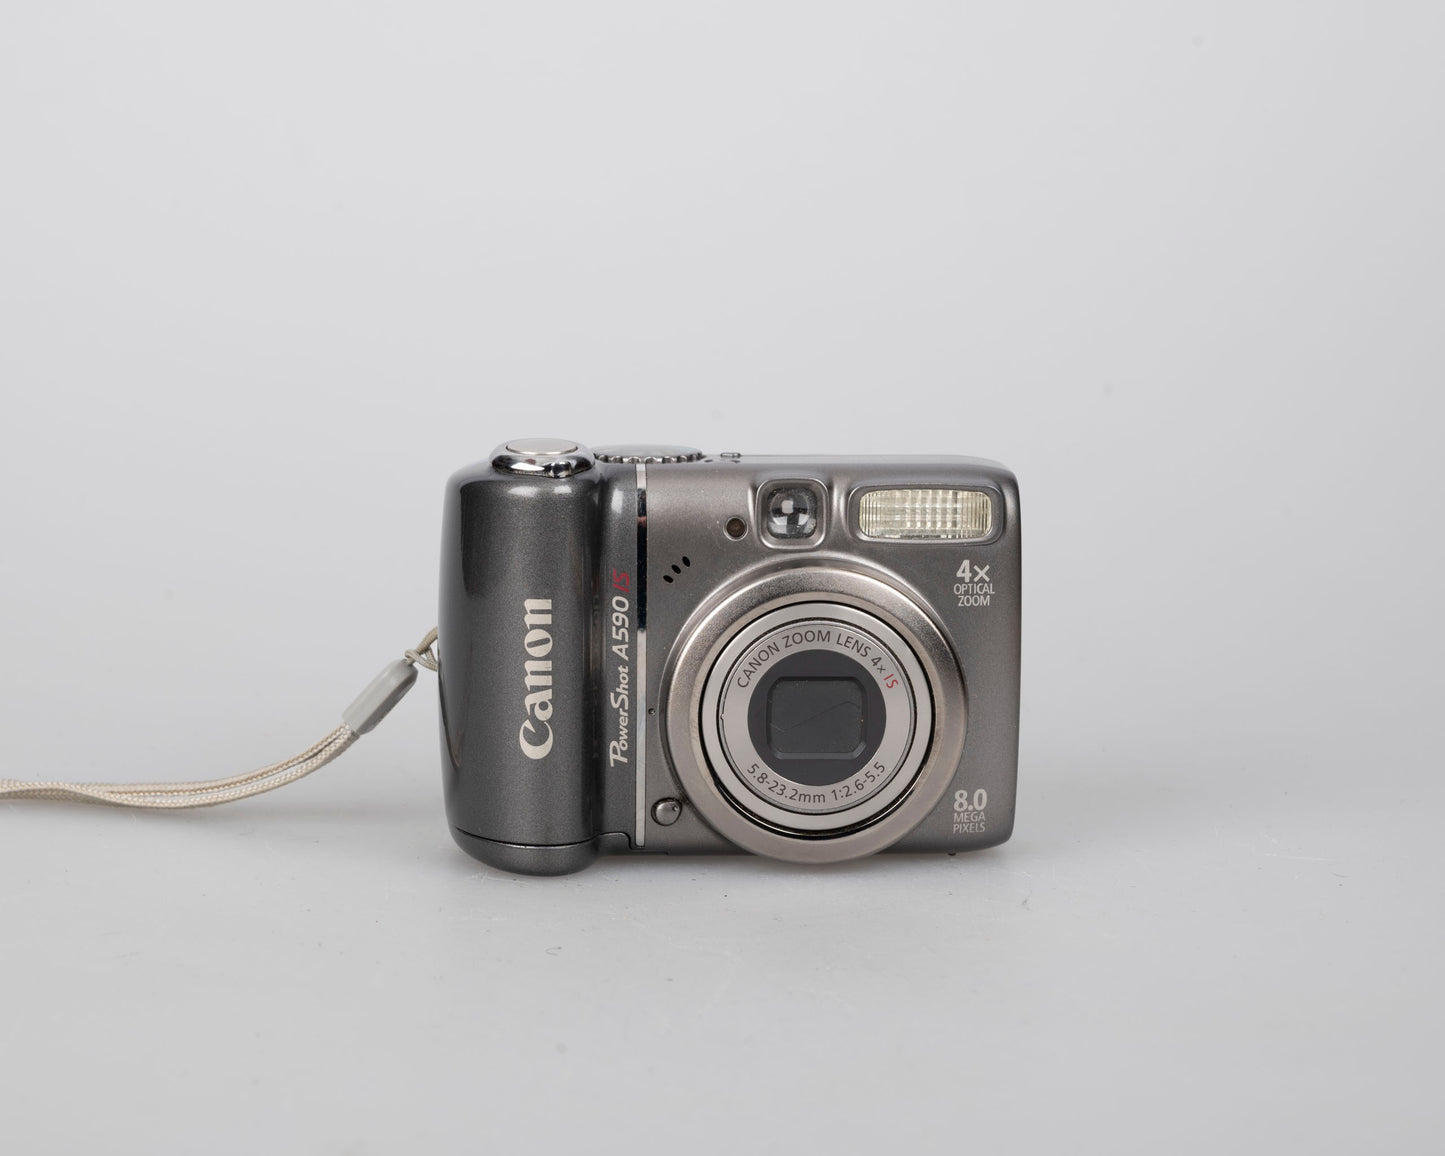 Appareil photo numérique Canon Powershot A590 IS avec capteur CCD 8 MP ; comprend une carte SD de 512 Mo (utilise des piles AA)